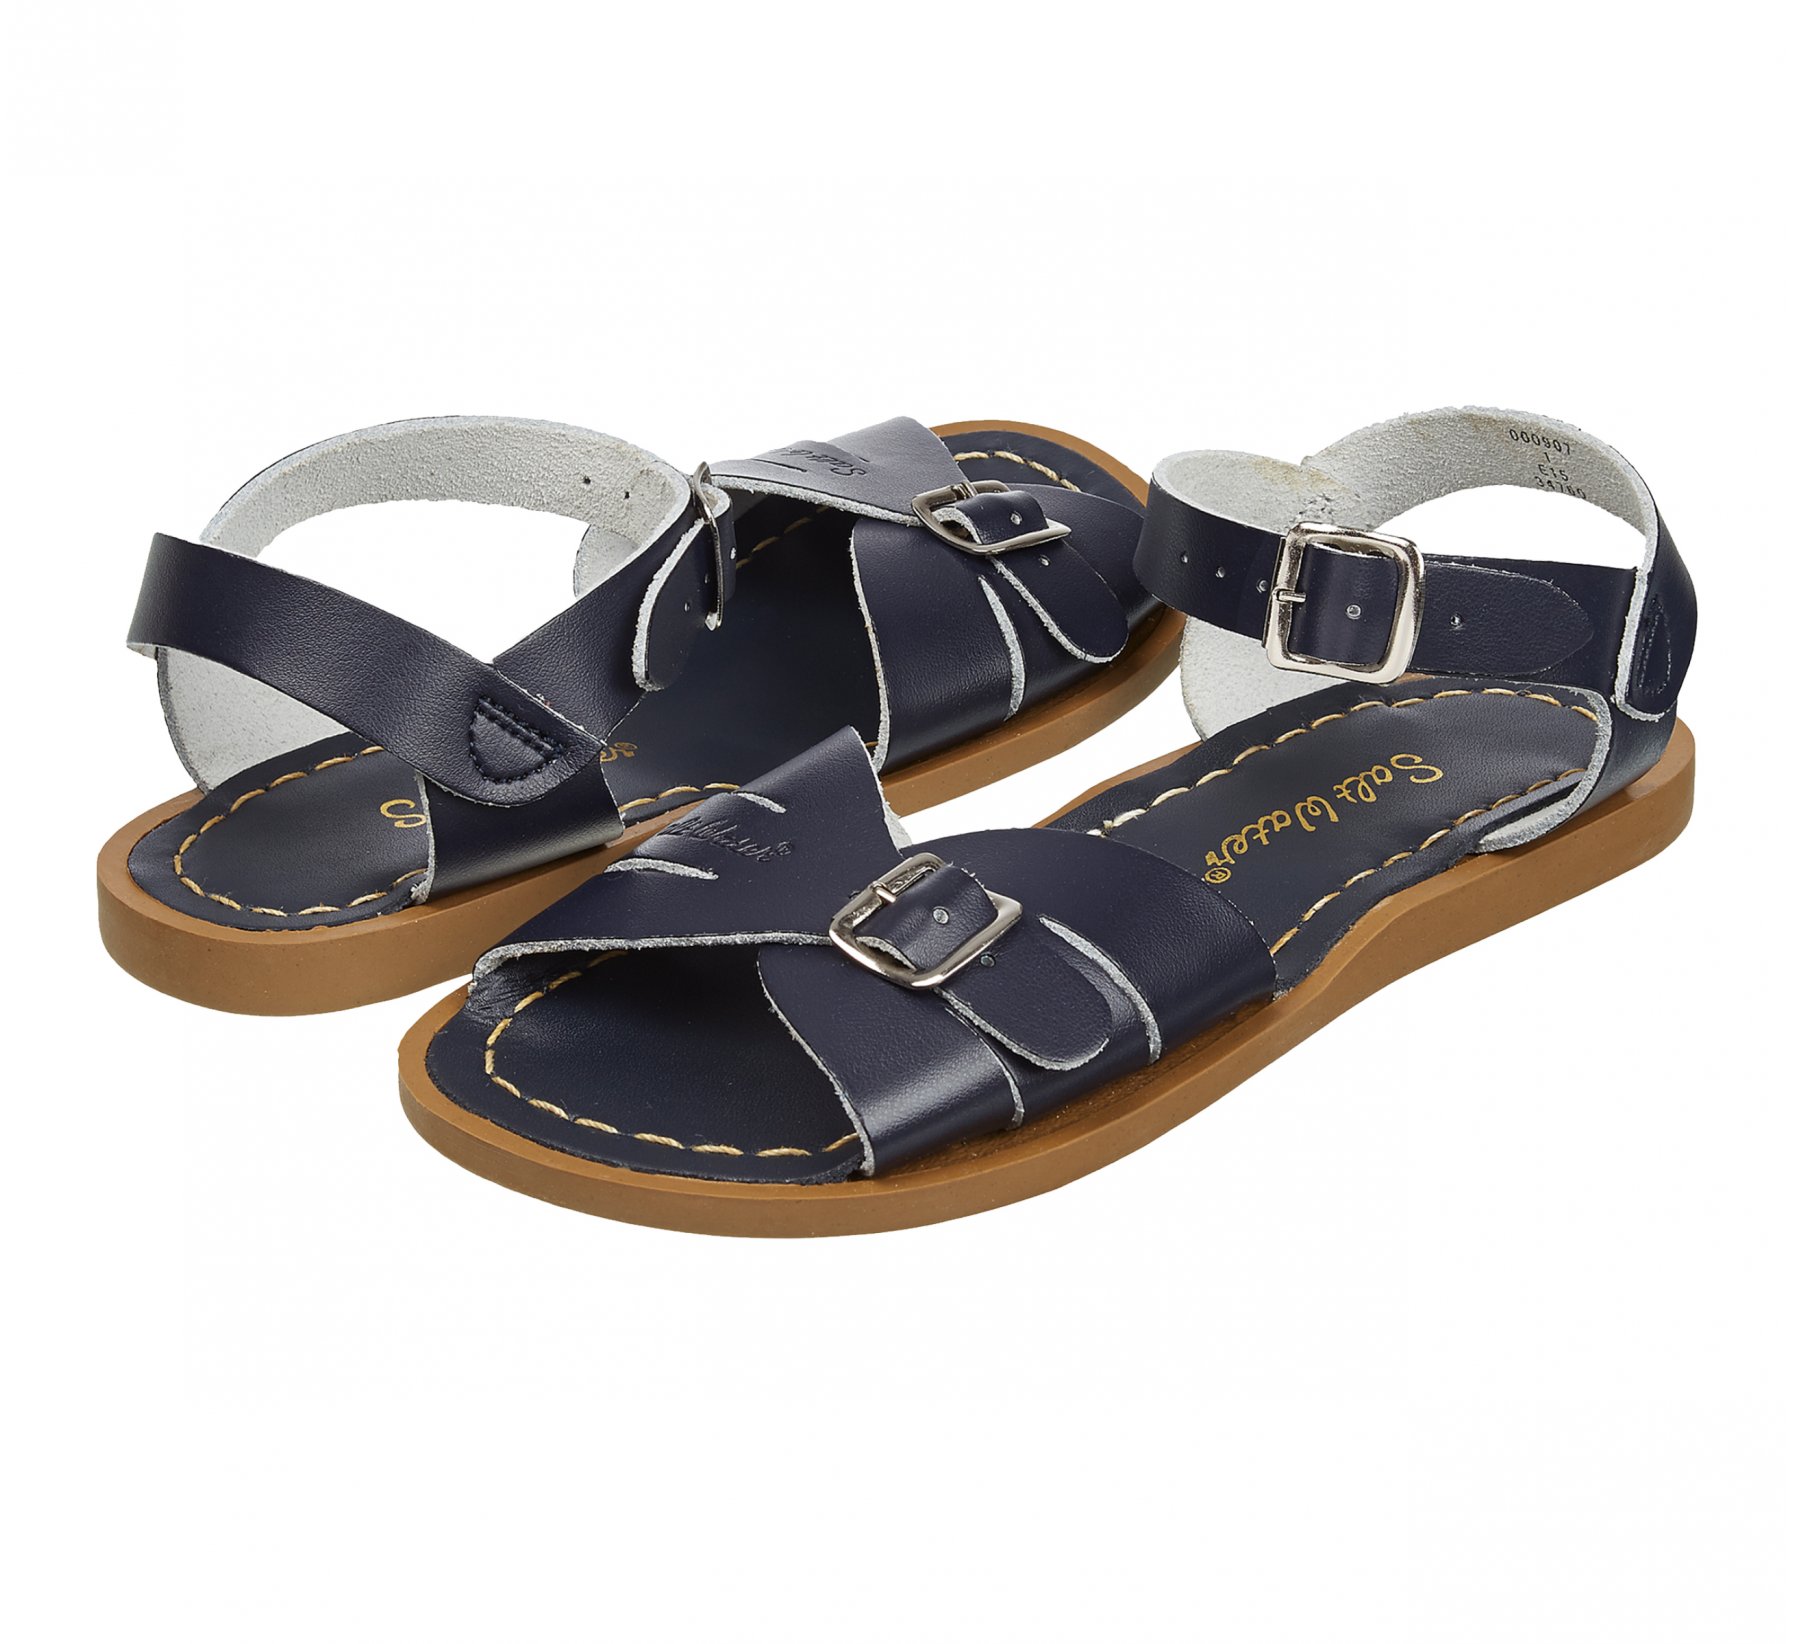 Classic Bleu Marine - Salt Water Sandals